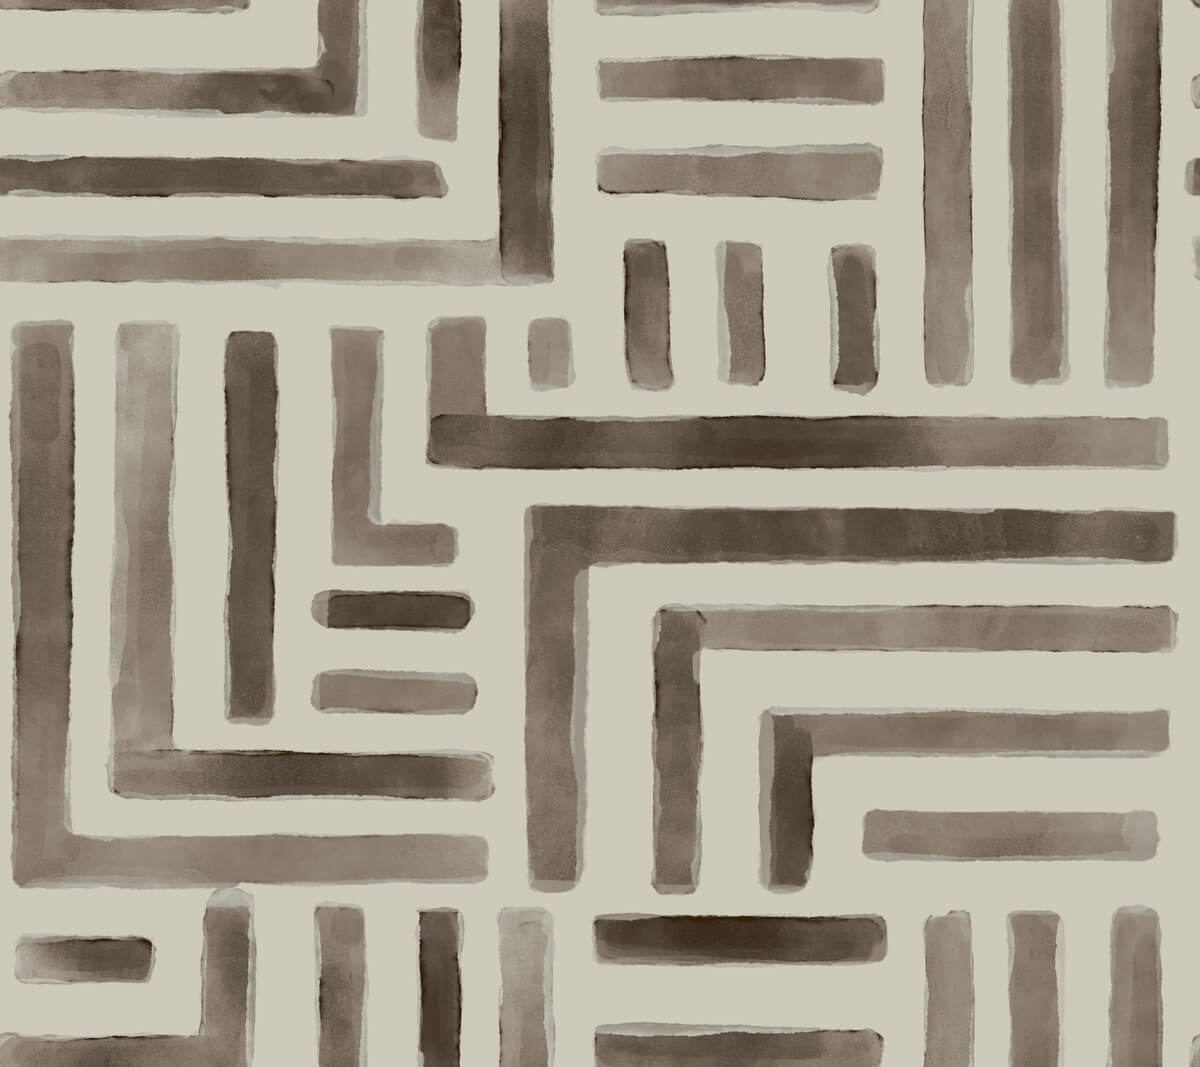 Lemieux et Cie Signature Painterly Labyrinth Wallpaper - Warm Neutral